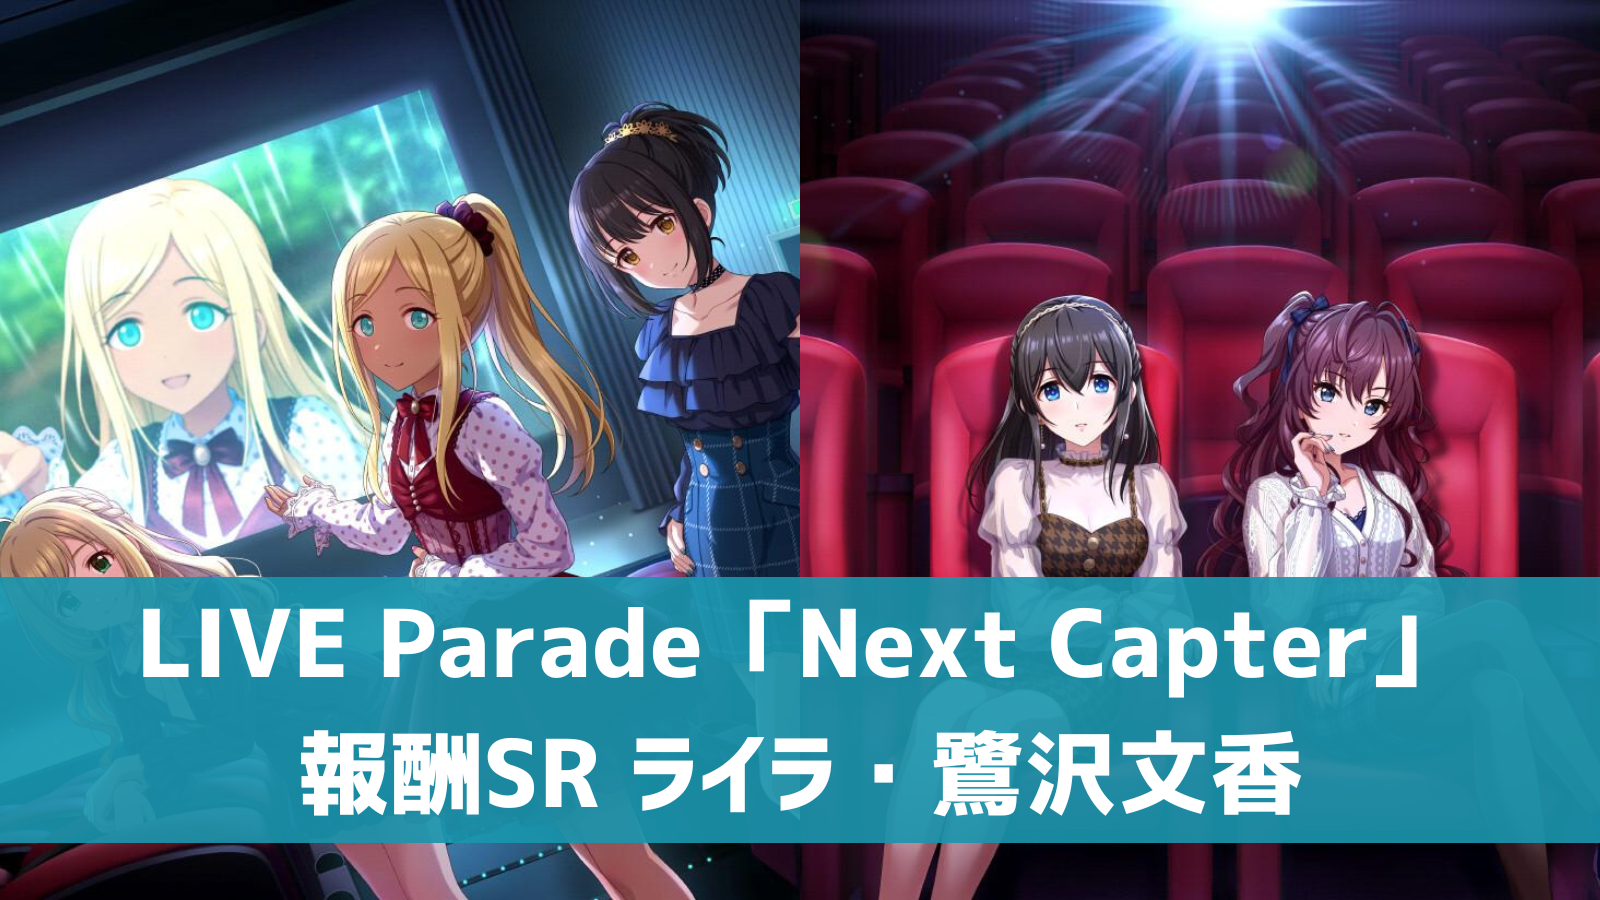 LIVE Parade「Next Capter」